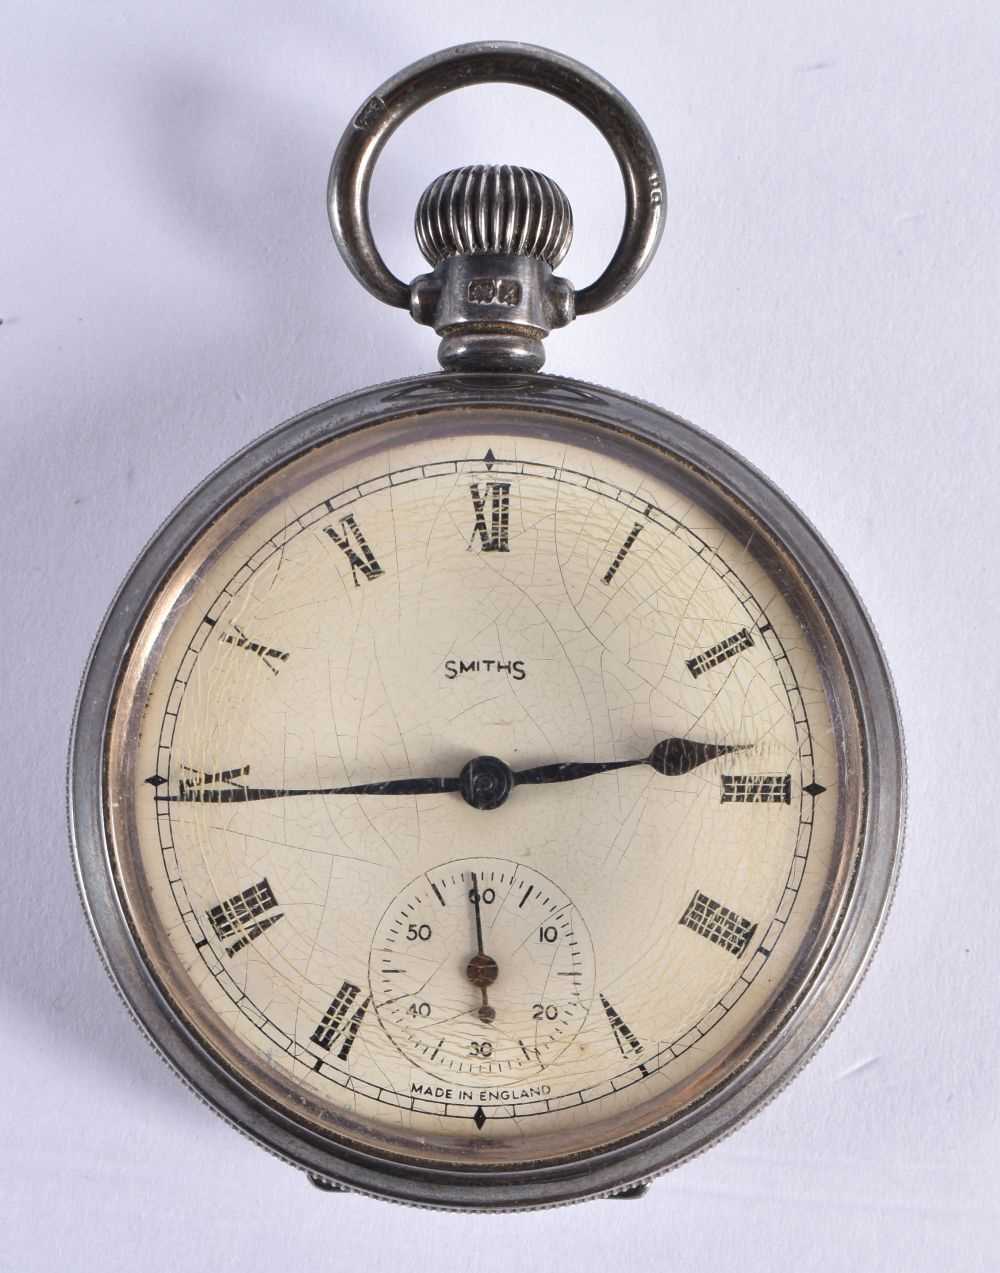 SMITHS Silver Gents Open Face Pocket Watch.  Hallmarked Birmingham 1947.  Movement - Hand-wind.